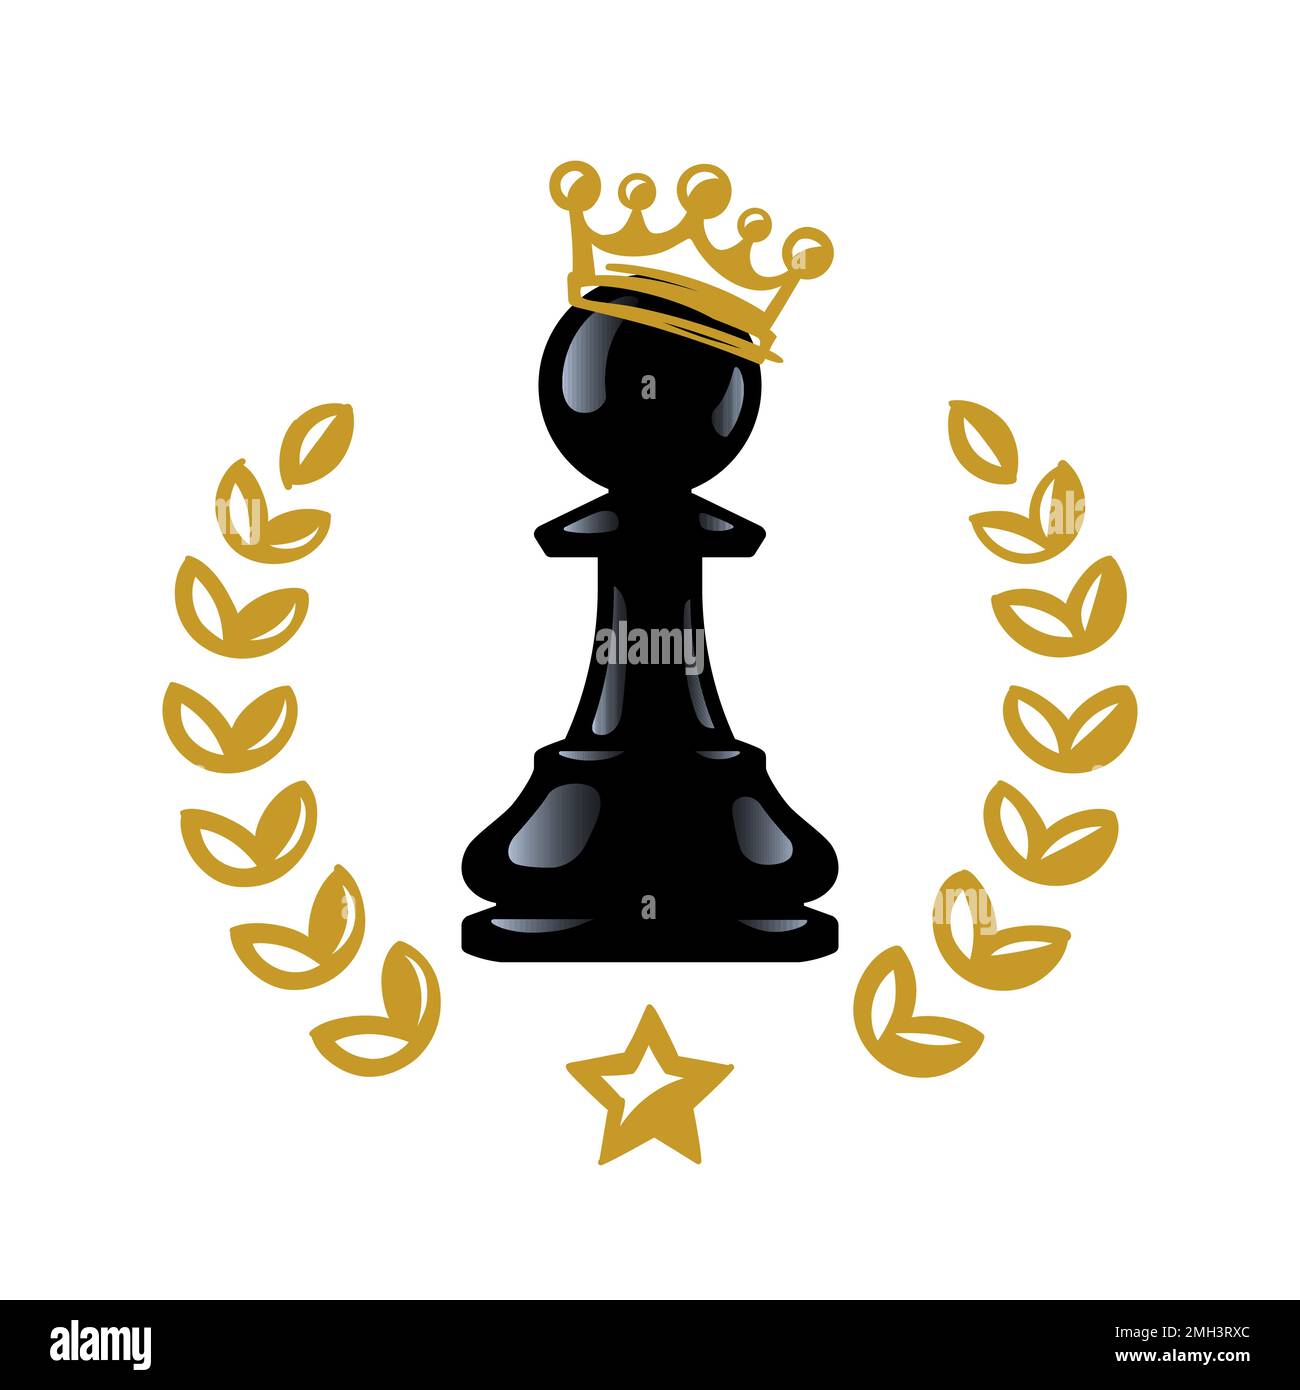 Le pion d'échecs est devenu roi. Le pion d'échecs est couronné d'une couronne. Illustration vectorielle isolée sur fond blanc. SPE 10 Illustration de Vecteur